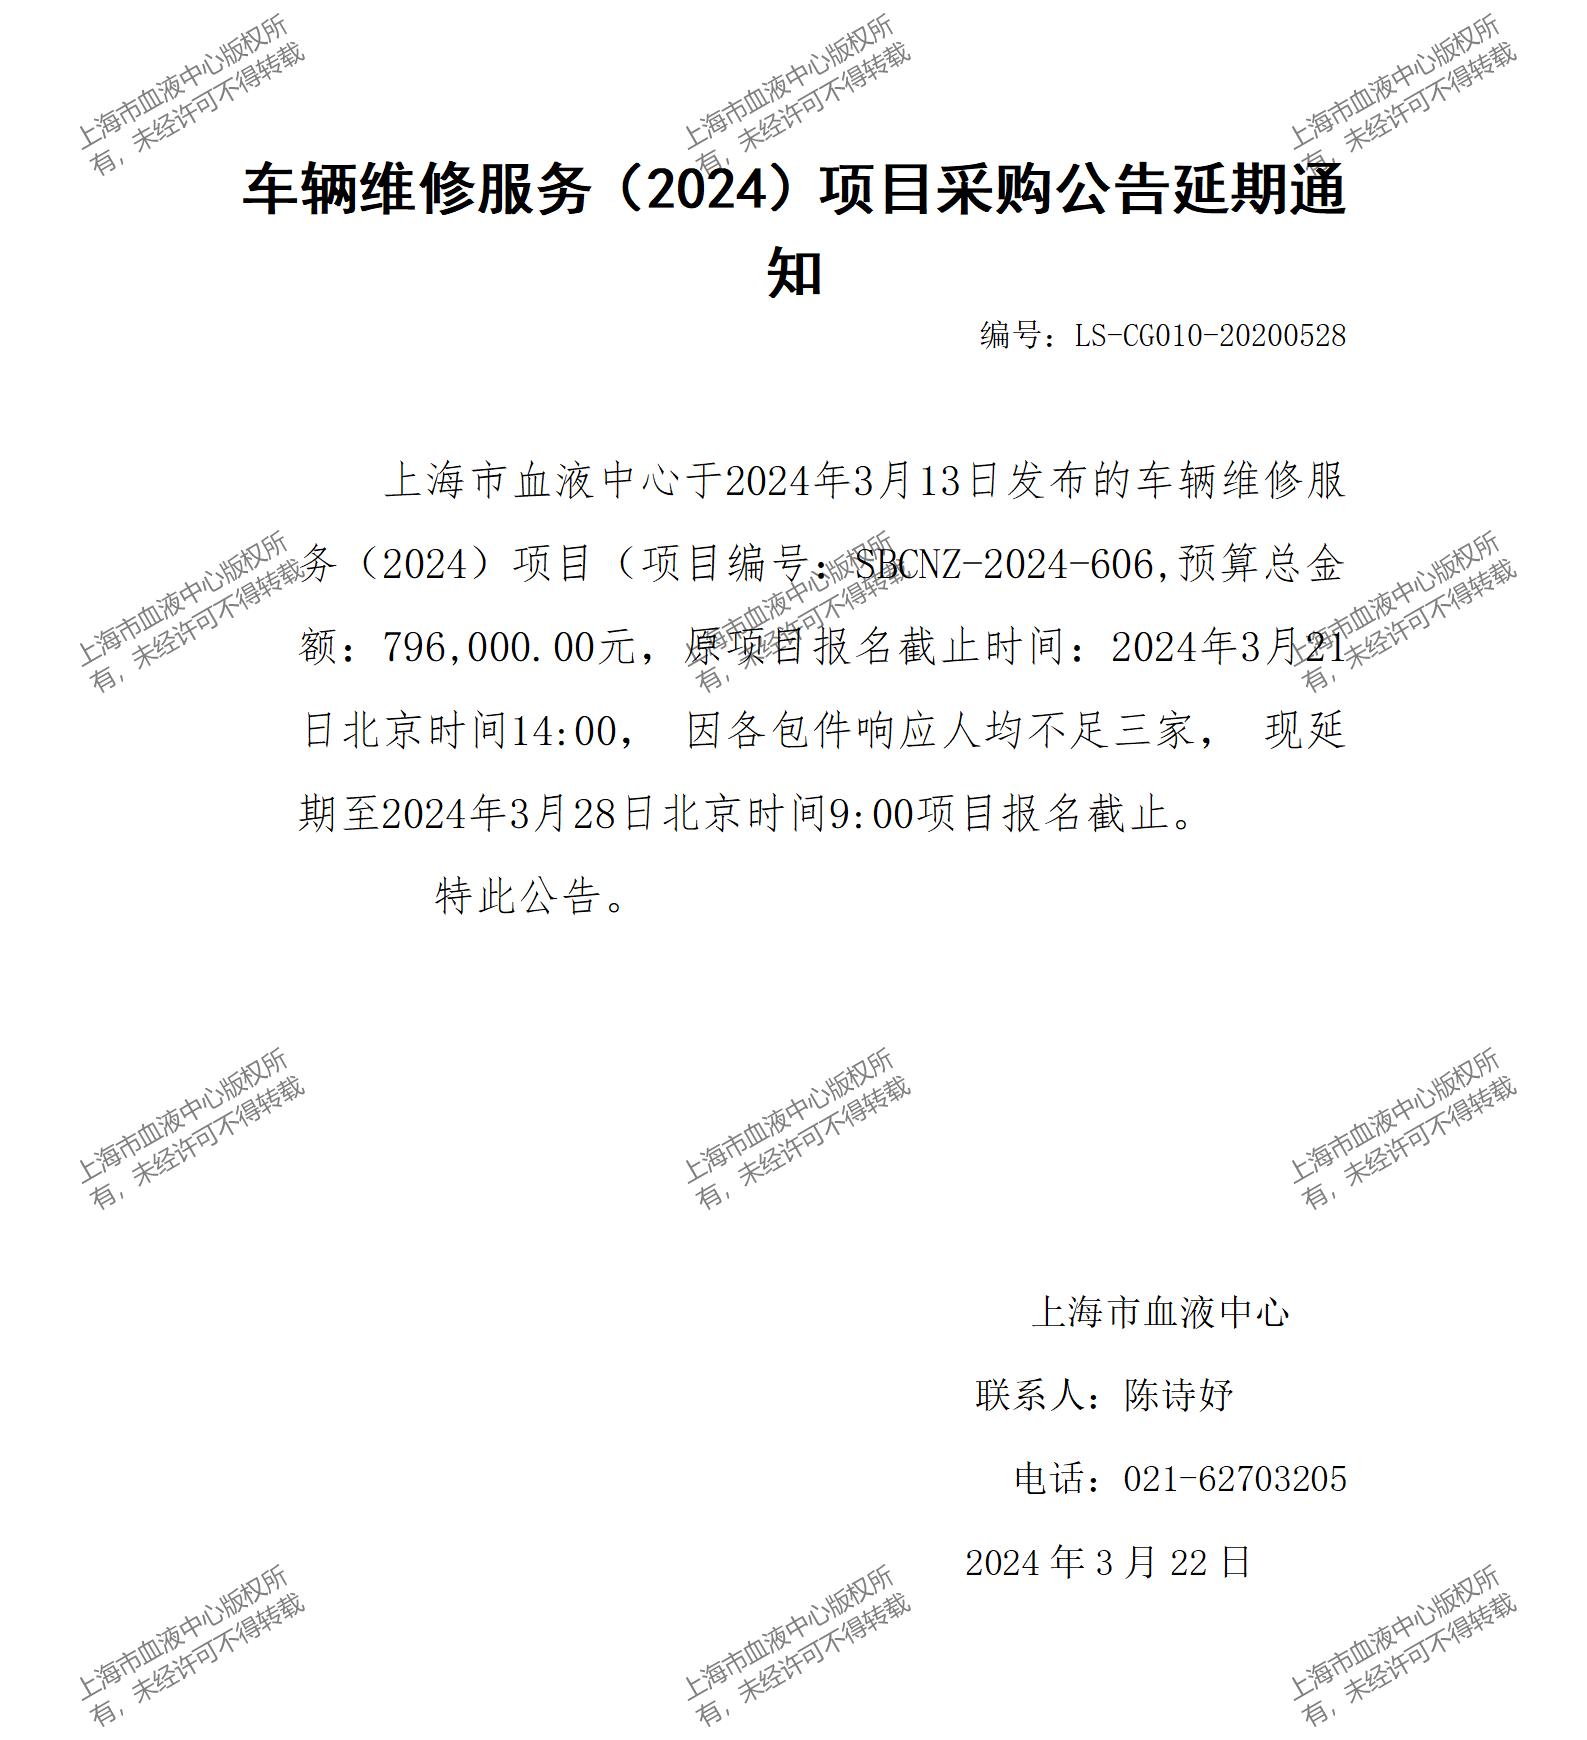 车辆维修服务（2024）项目采购公告延期通知_01(1).jpg